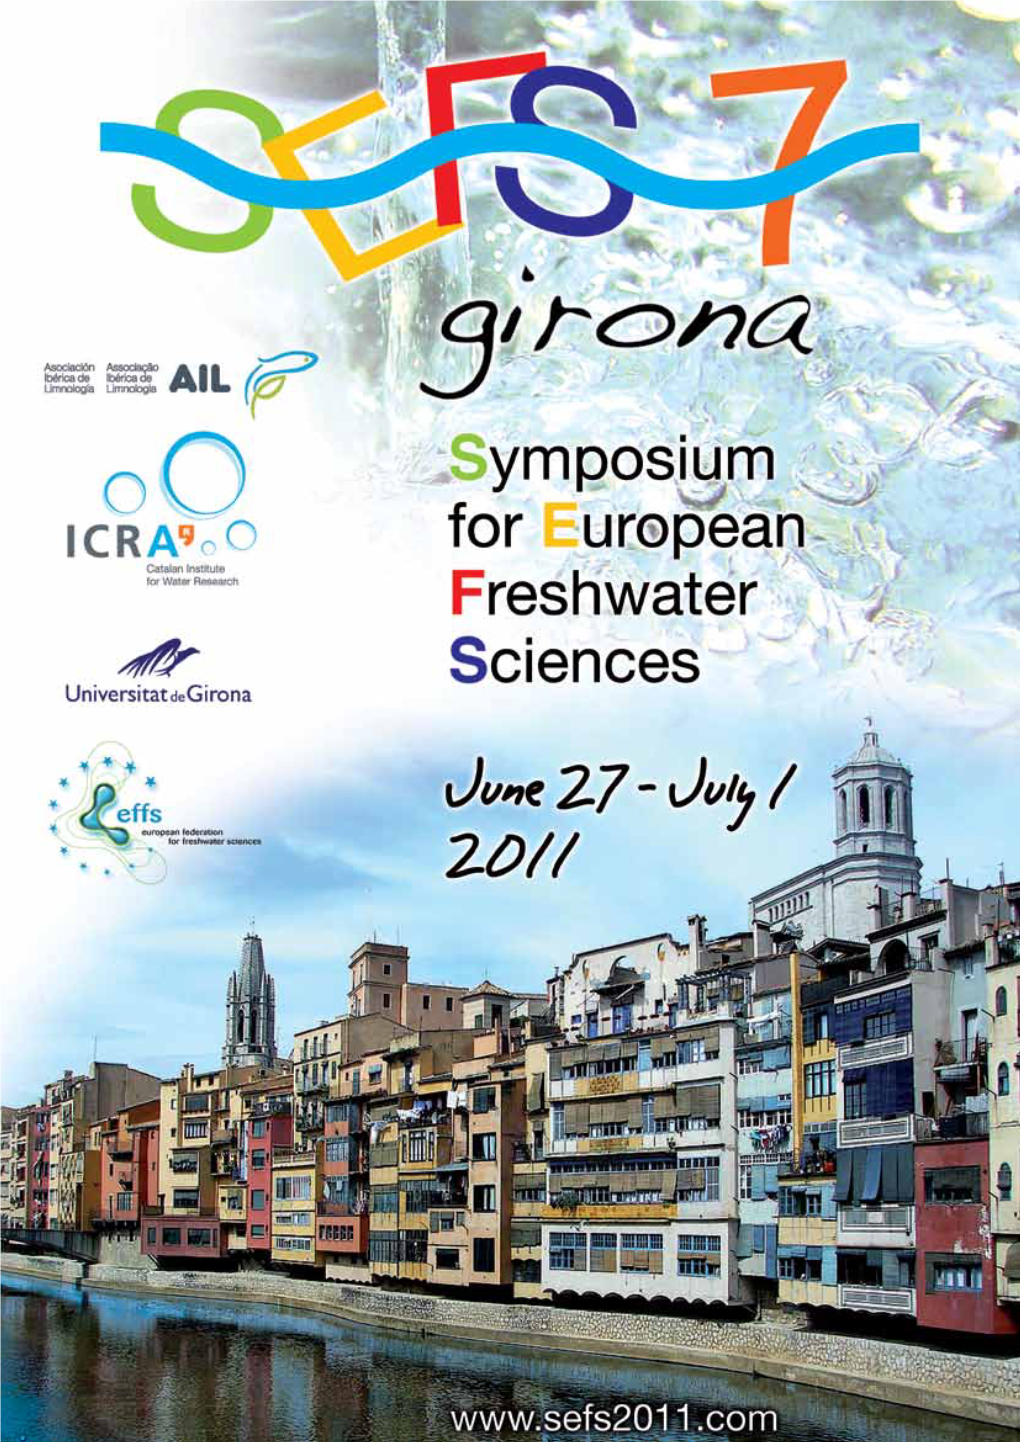 Programme 2 Girona, 27 June - 1 July 2011 SEFS 7